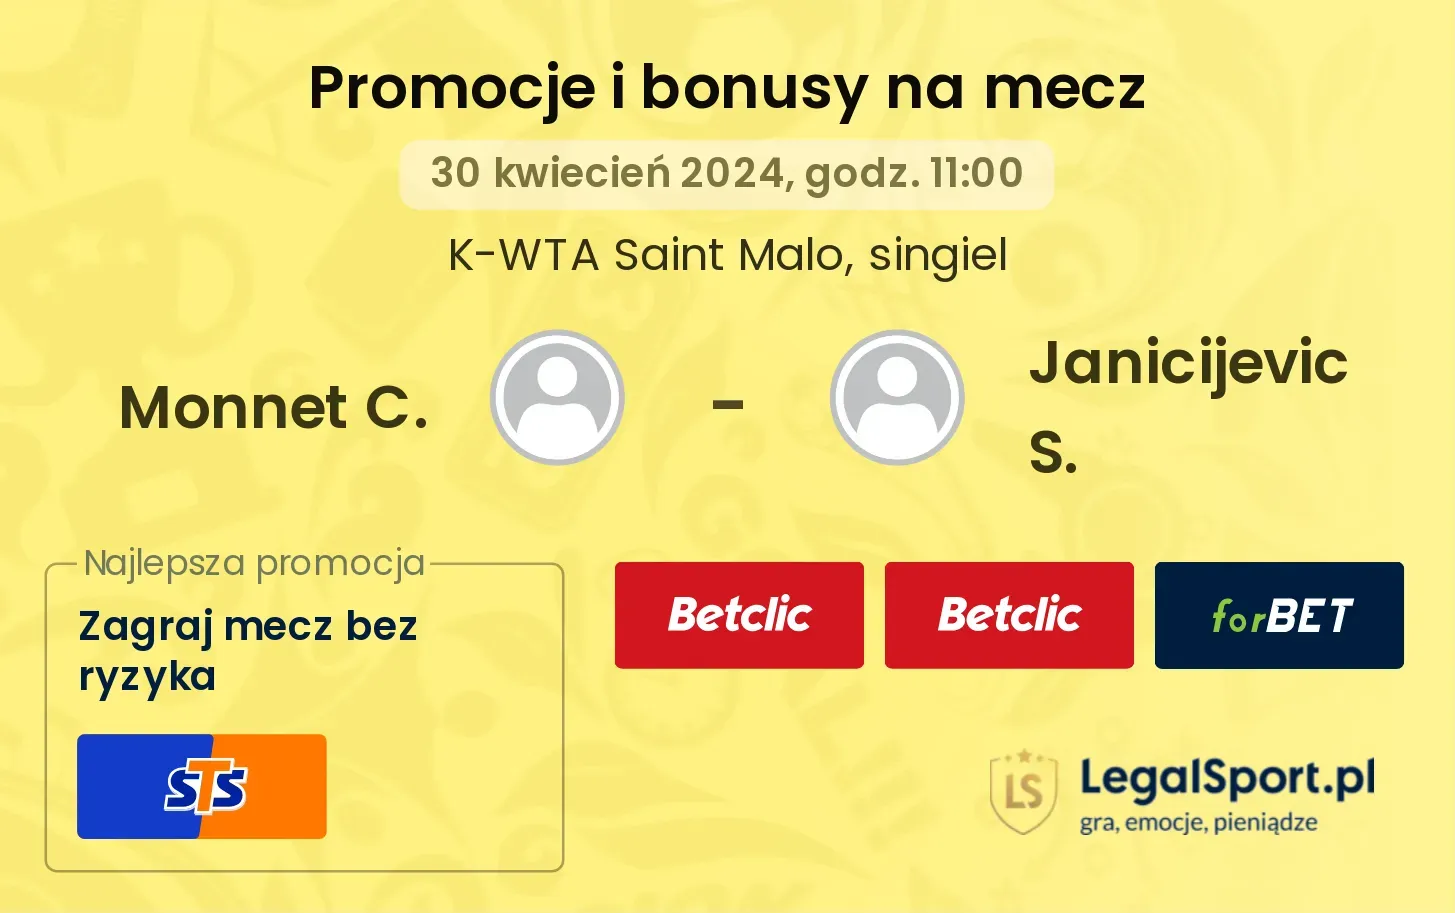 Monnet C. - Janicijevic S. promocje bonusy na mecz